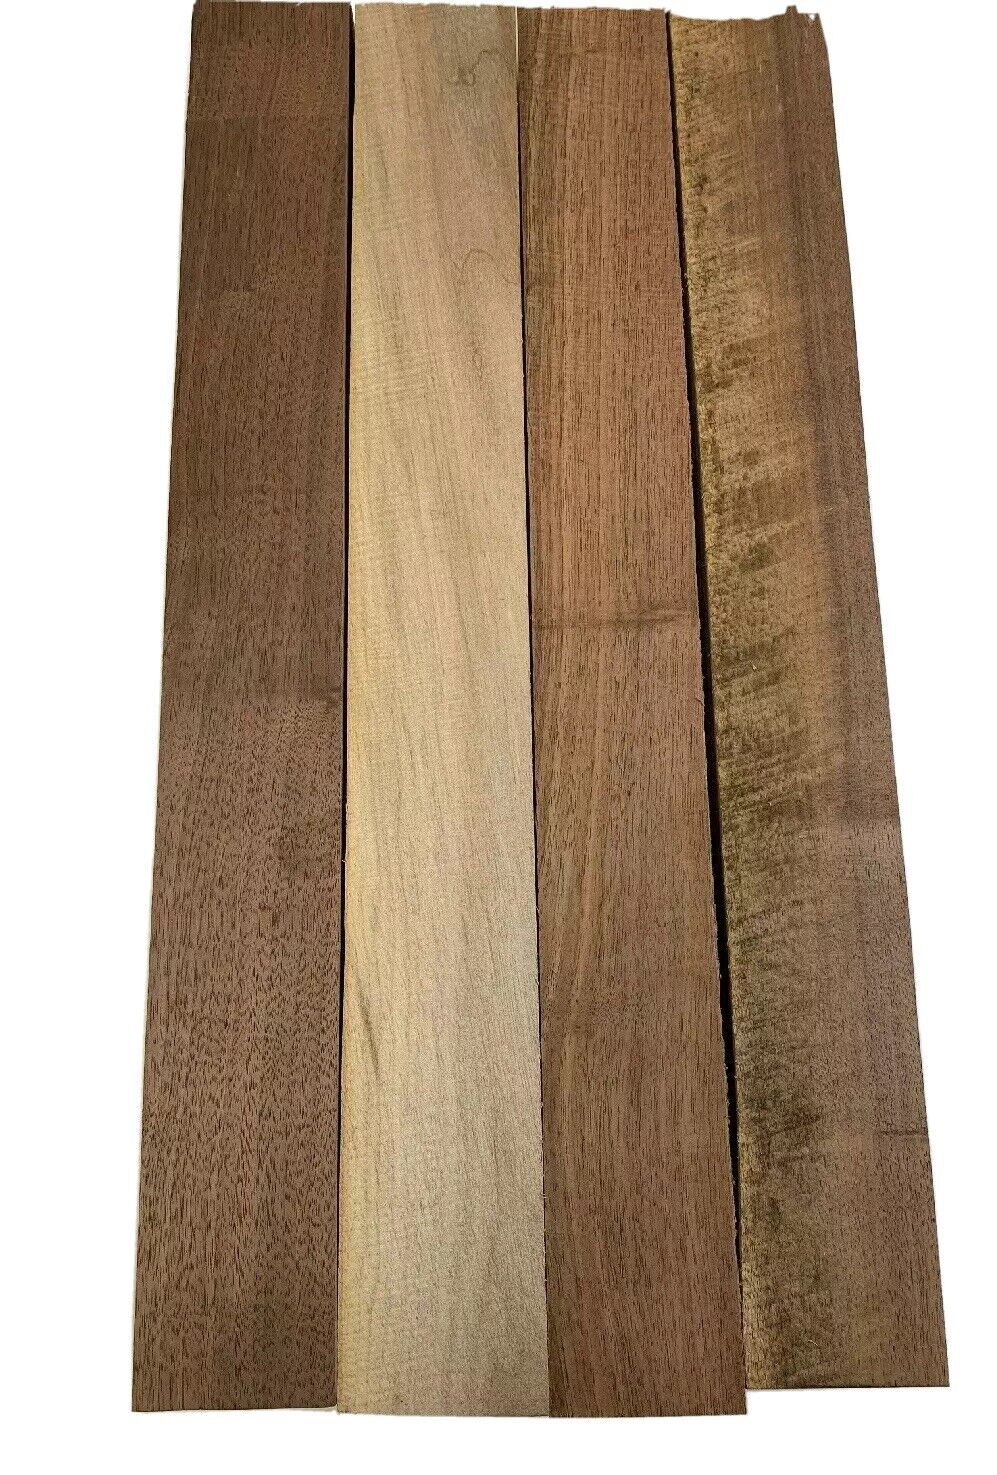 4 Pack Set,  Black Walnut Lumber Board, Turning Wood  - 2" x 2" x 12"  FREE SHIP EXOTIC WOOD ZONE Turning Wood Blanks - фотография #4